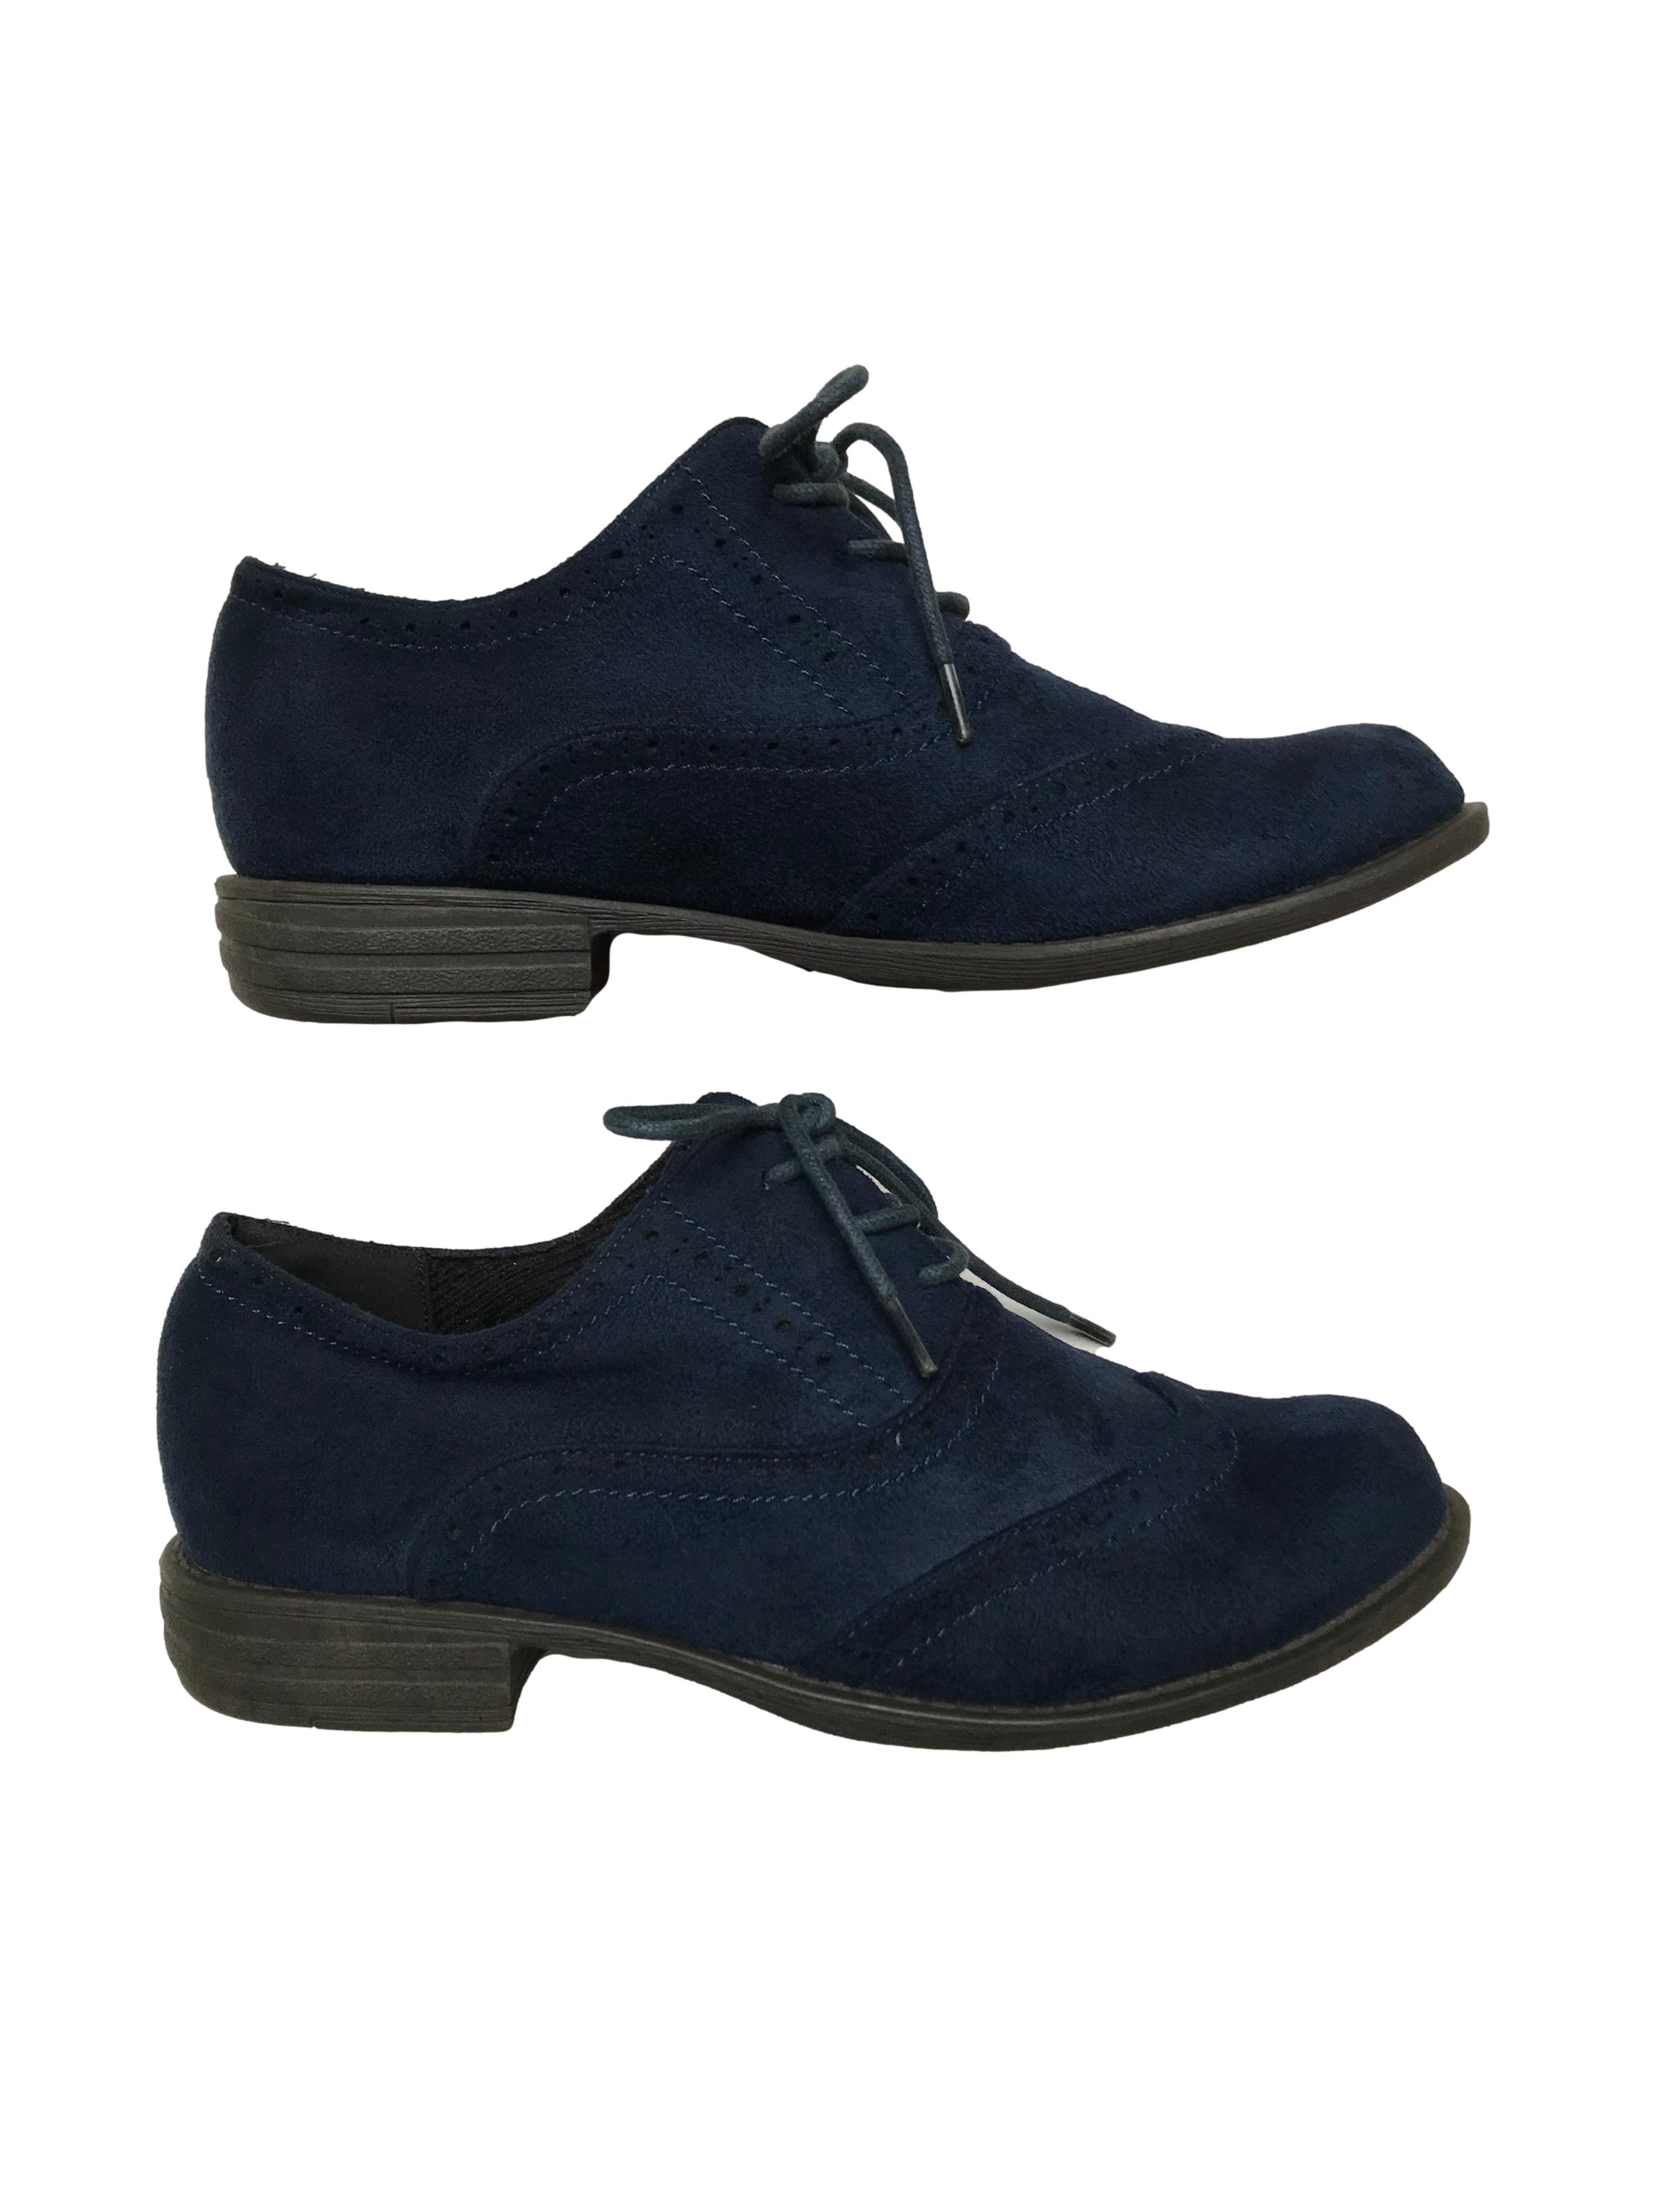 Zapatos Bata estilo Oxford de textil tipo piel de durazno y pasadores. Estado 9/10. 